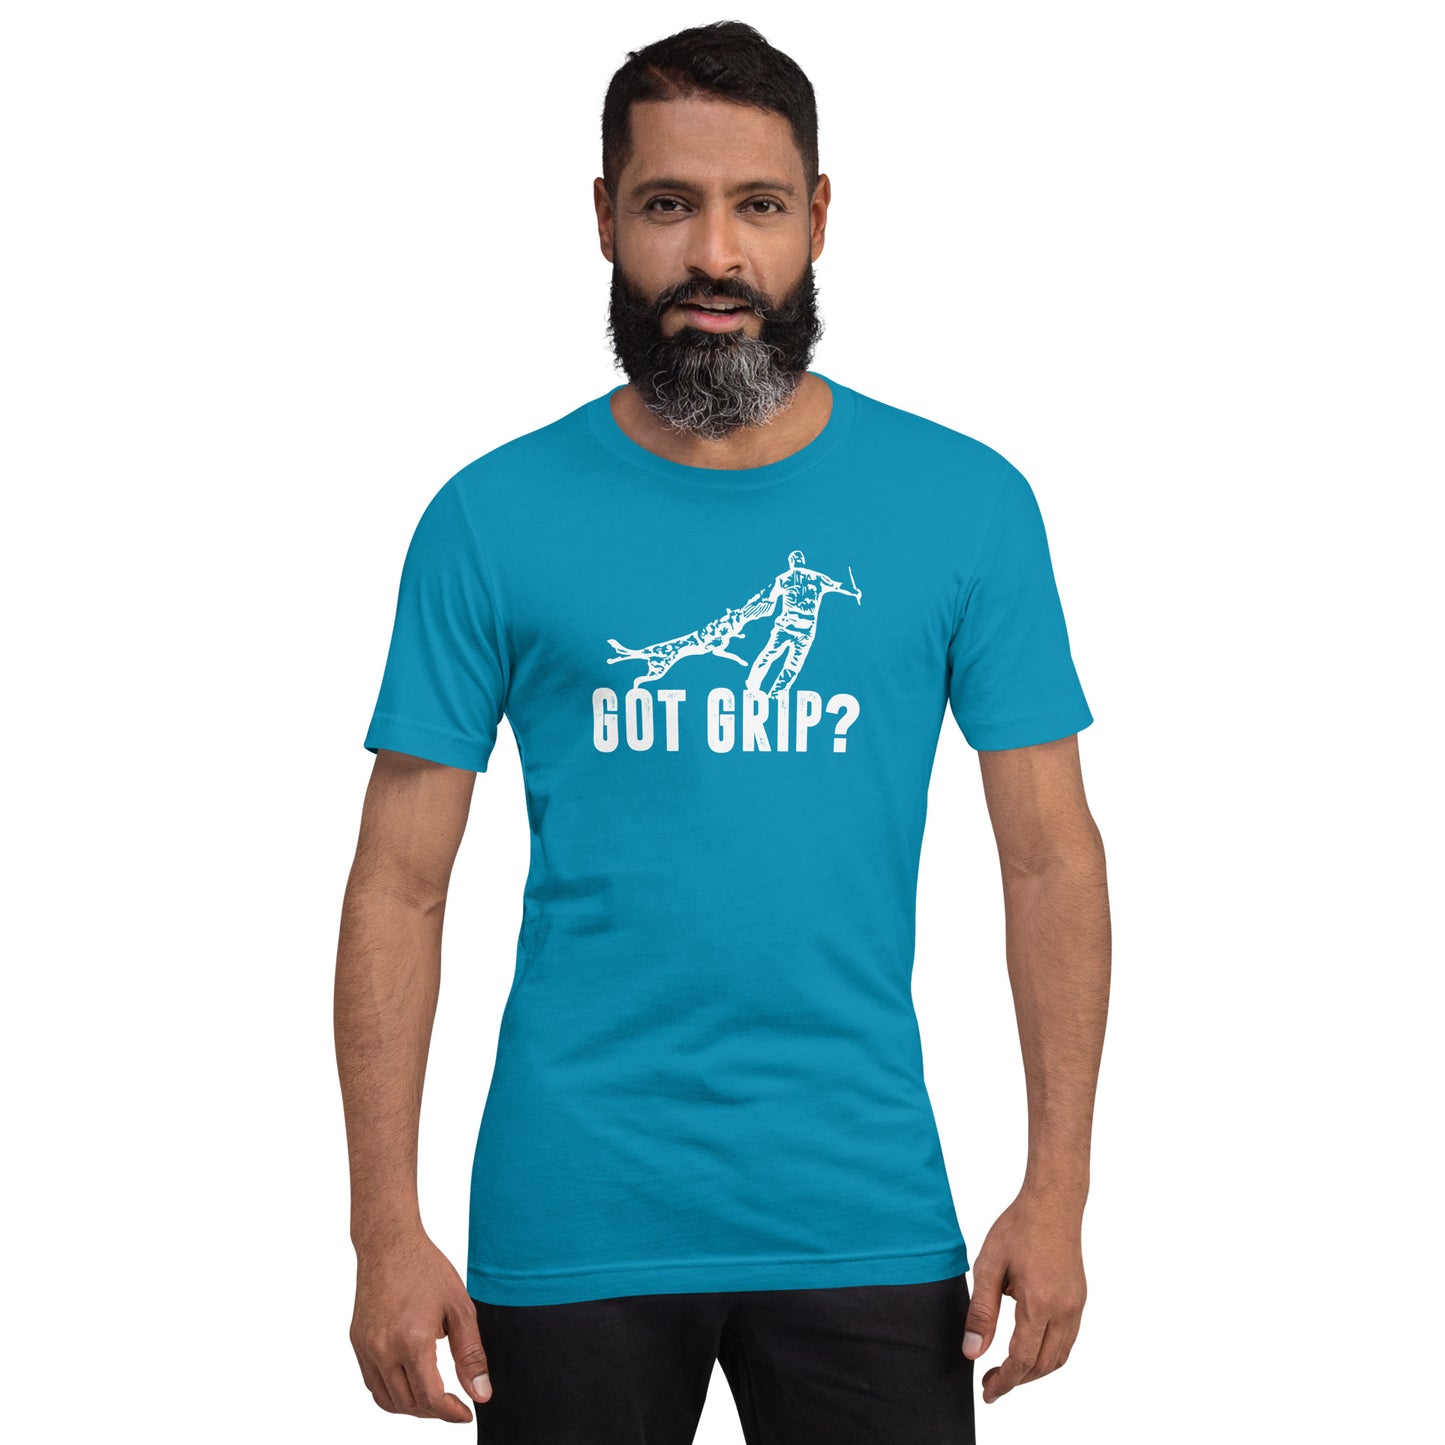 GOT GRIP? - Unisex t-shirt